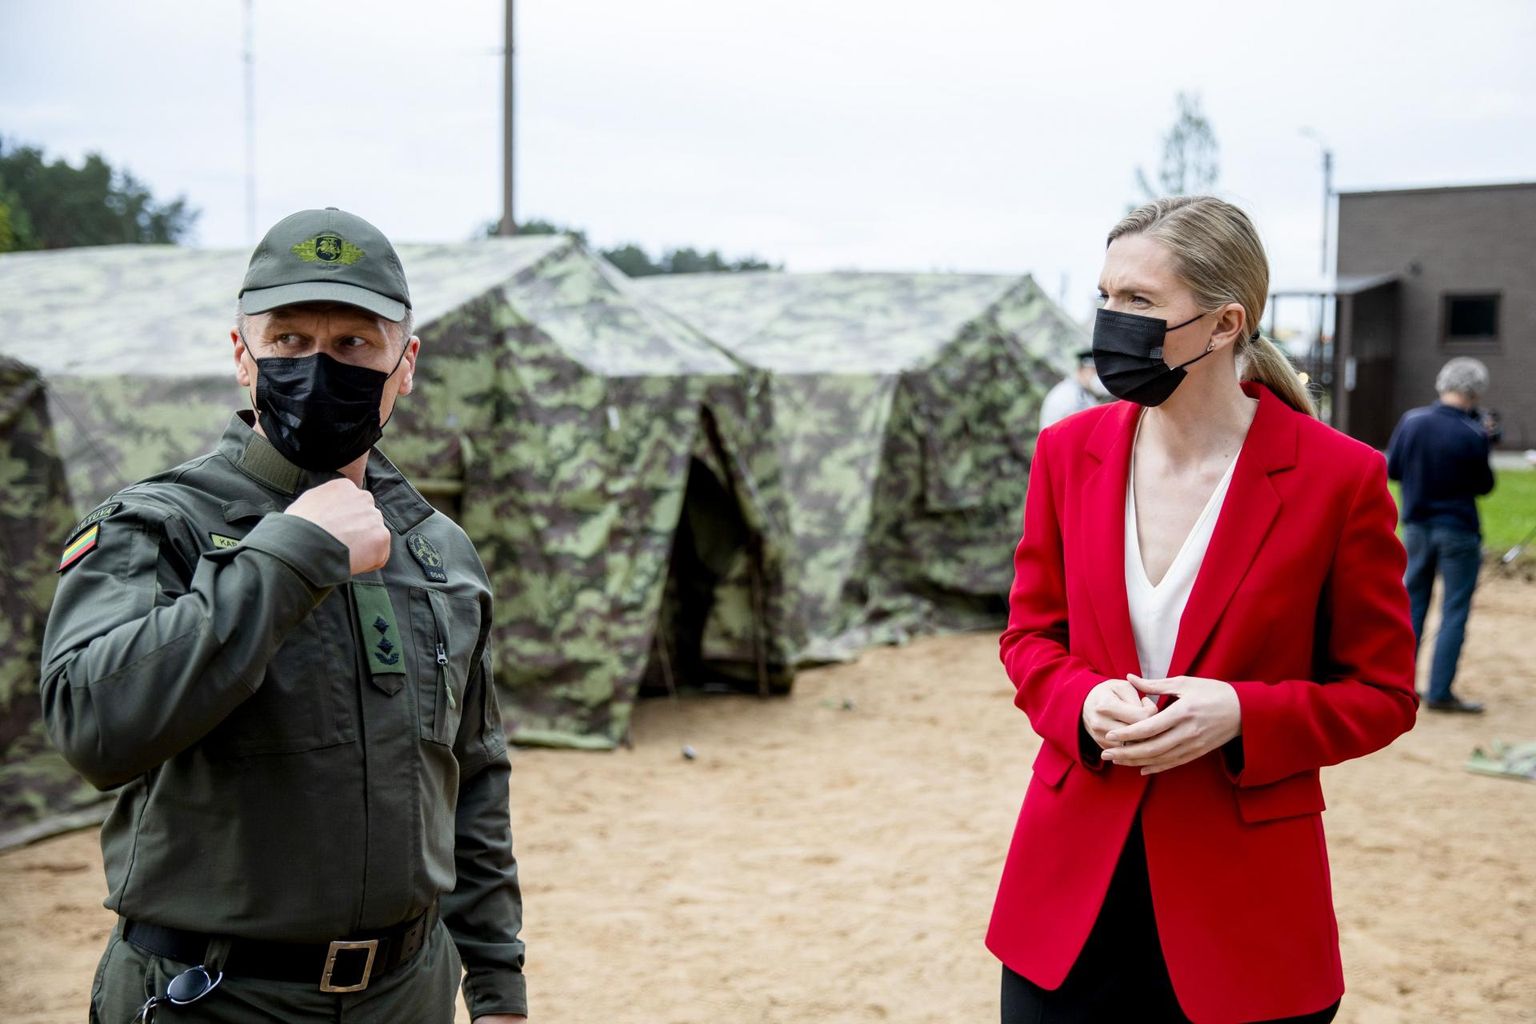 Leedu siseminister Agnė Bilotaitė (paremal) külastas üle-eelmisel nädalal Pabradė põgenikekeskust, kuhu on üles seatud telklinnak Valgevenest saabuvate migrantide majutamiseks.